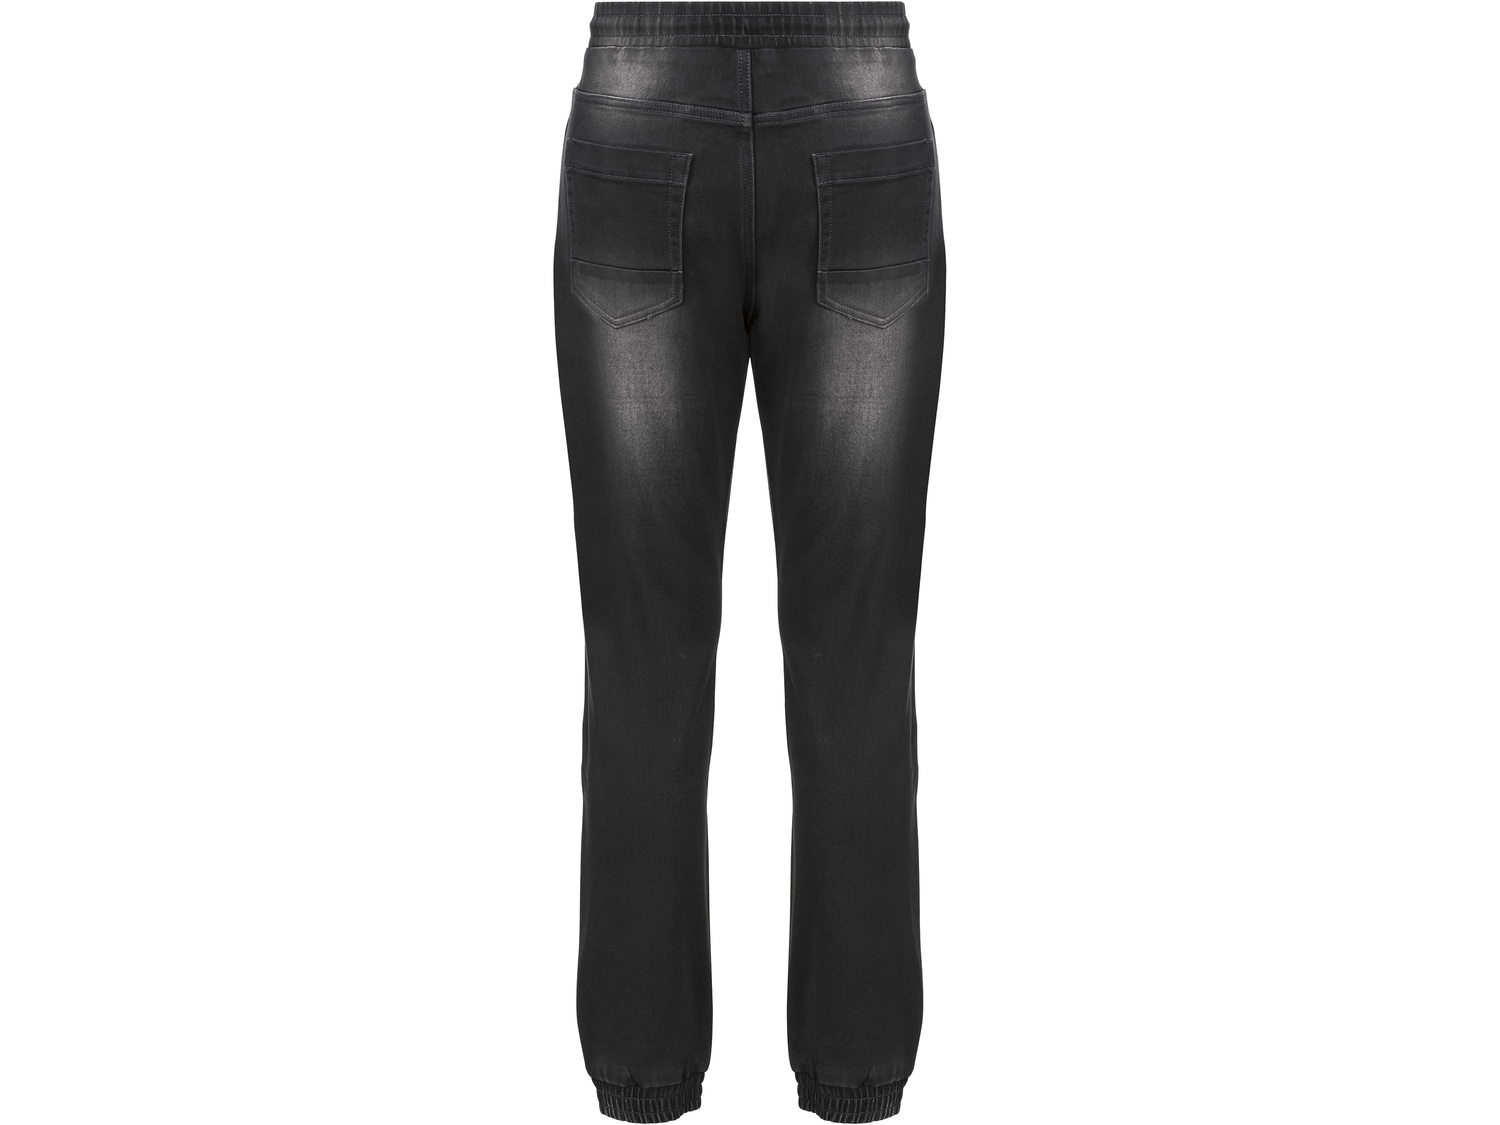 Joggery Livergy, cena 39,99 PLN 
- wysoka zawartość bawełny
- jeans o wygodzie ...